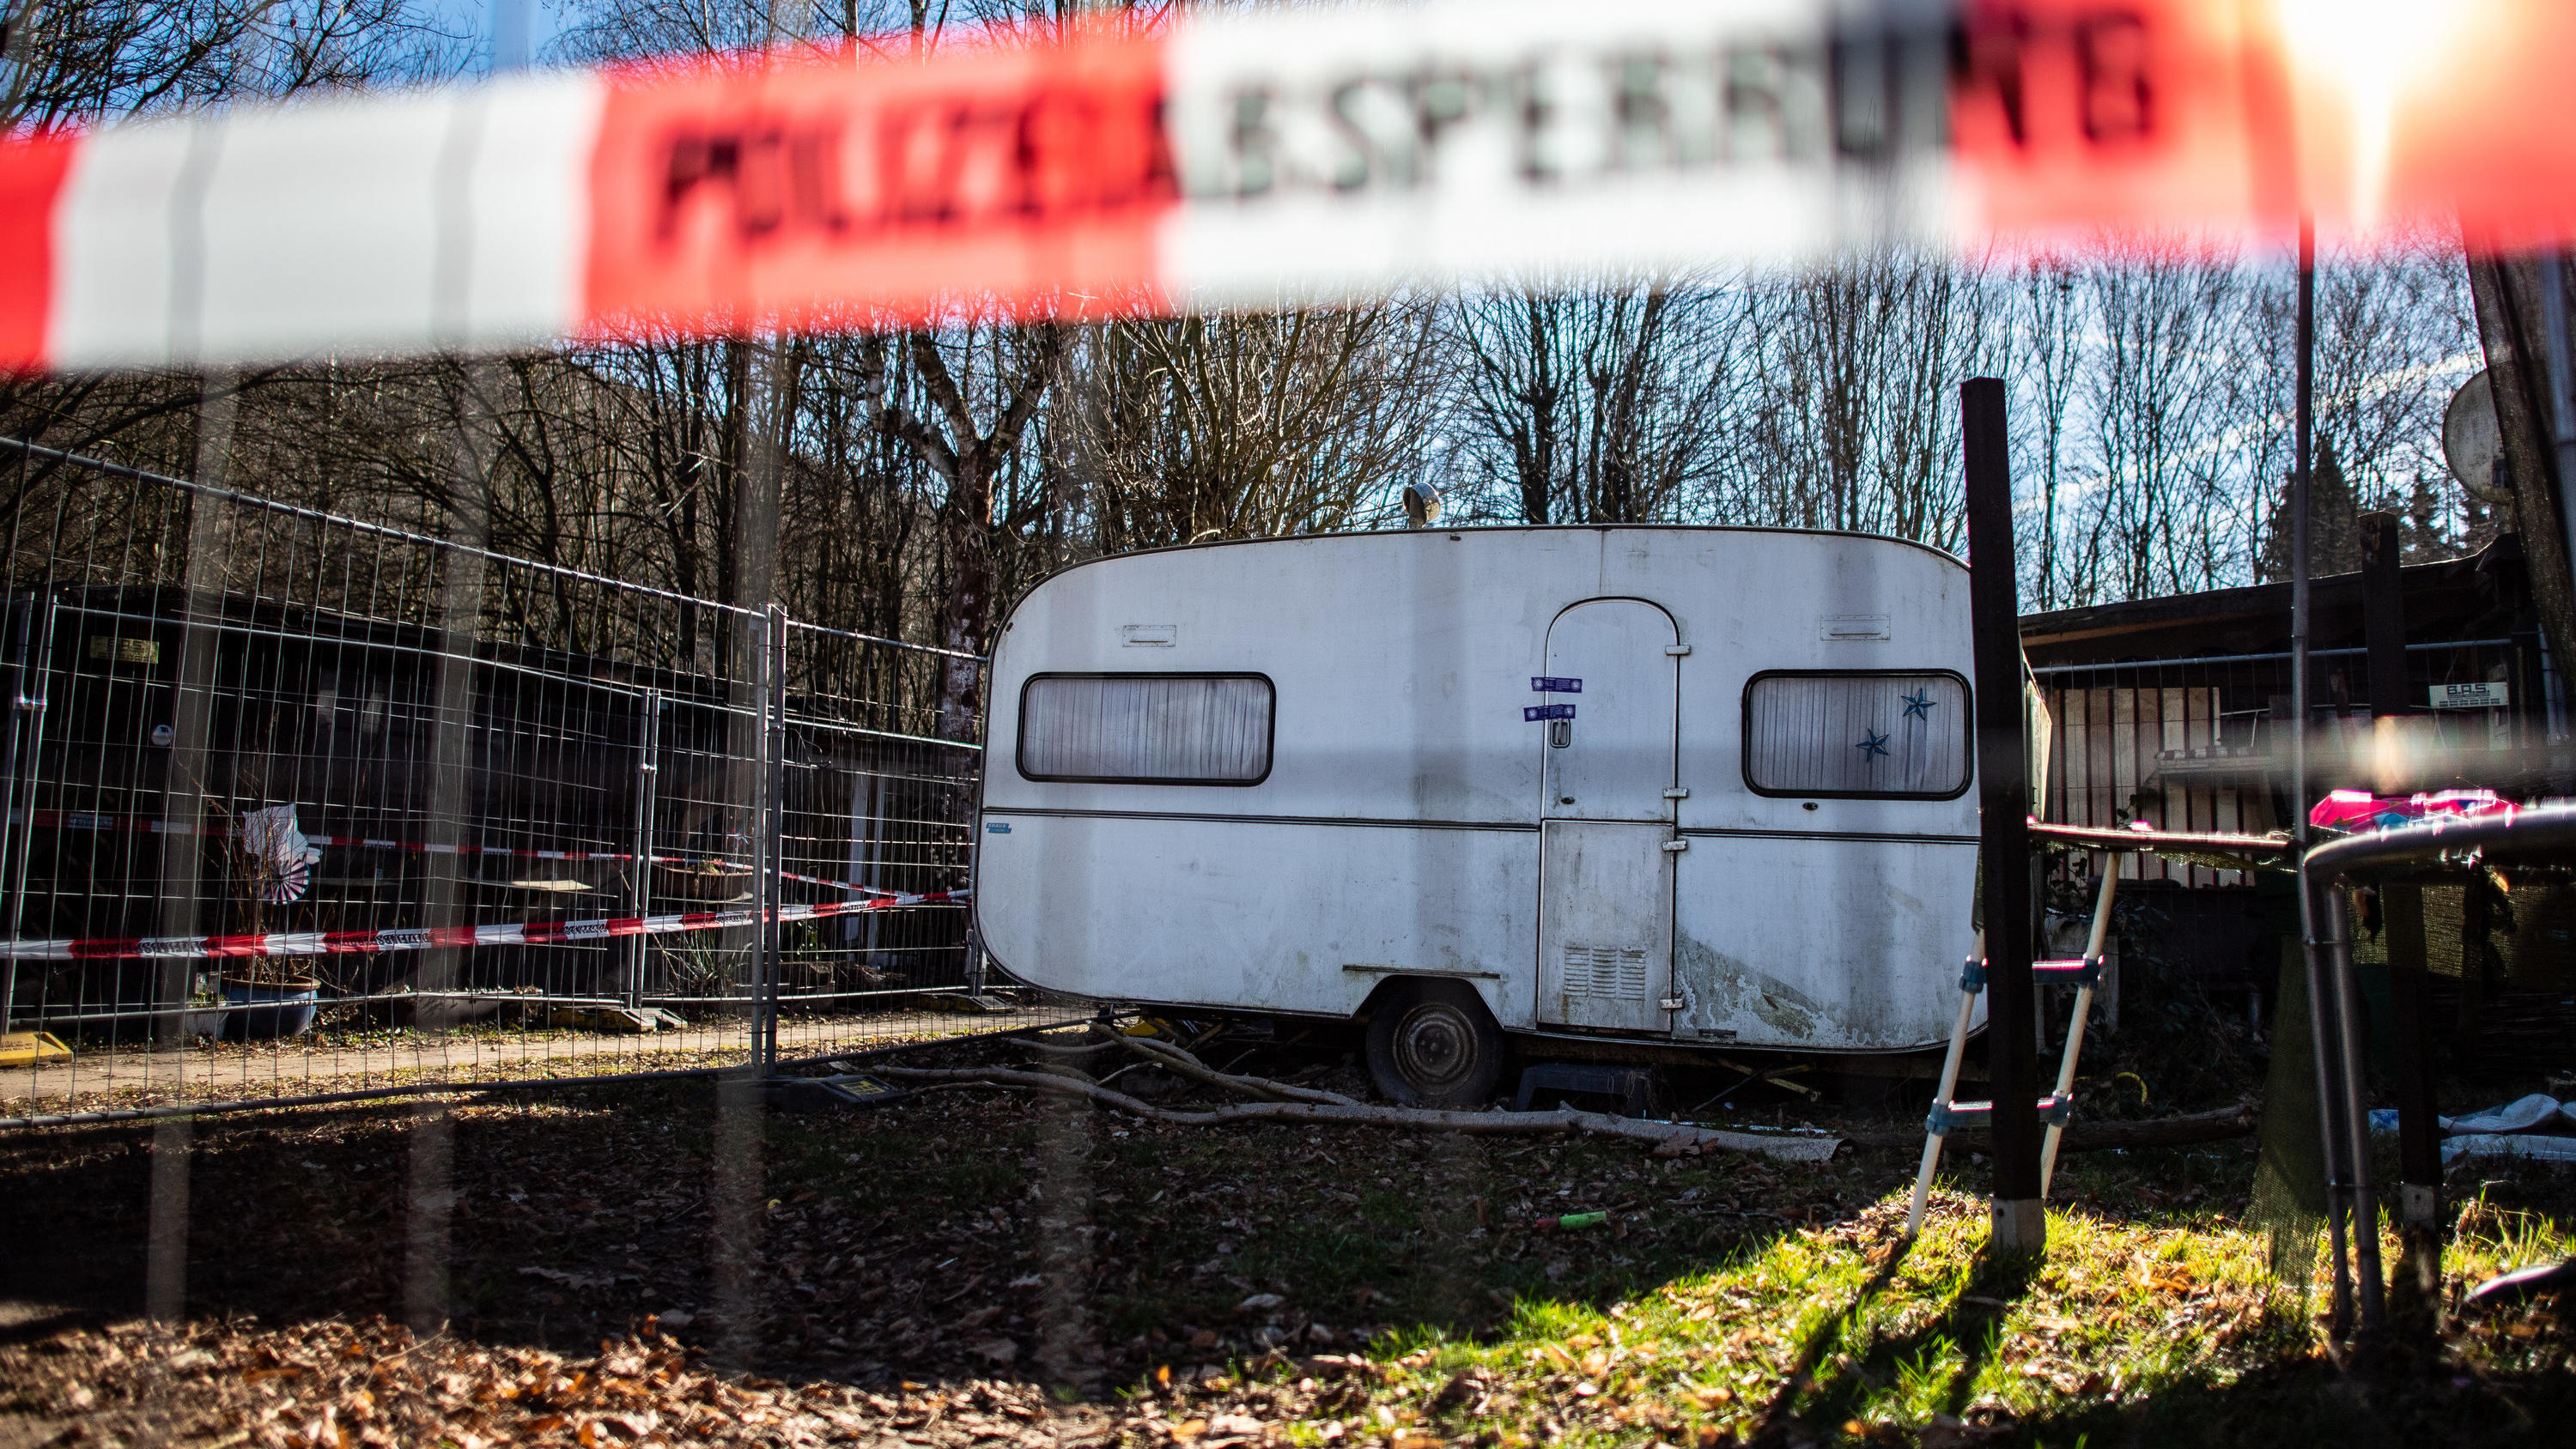 24.02.2019, Nordrhein-Westfalen, Lügde: Auf dem Campingplatz Eichwald in der inzwischen eingezäunten Parzelle des mutmaßlichen Täters steht der versiegelte Campingwagen, aus dem die Beweismittel stammen, die mittlerweile verschwunden sind. Auf dem Ca